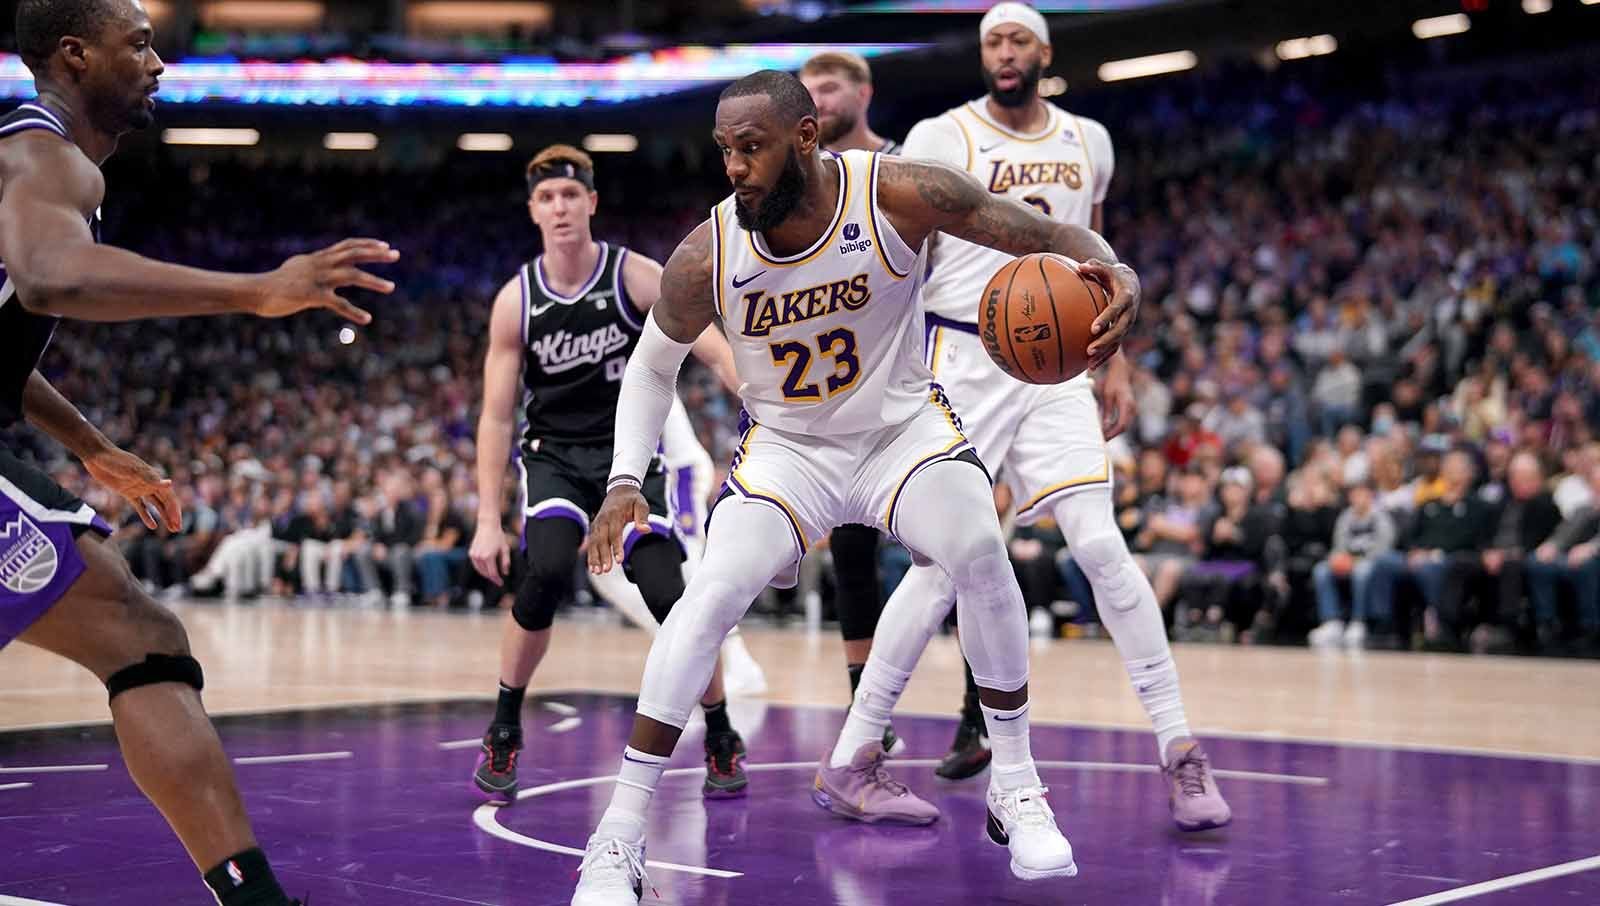 Penyerang Los Angeles Lakers LeBron James saat menguasai bola mencoba melewati lawan Sacramento Kings pada laga NBA di Golden 1 Center. (Foto: REUTERS/Cary Edmondson) Copyright: © REUTERS/Cary Edmondson